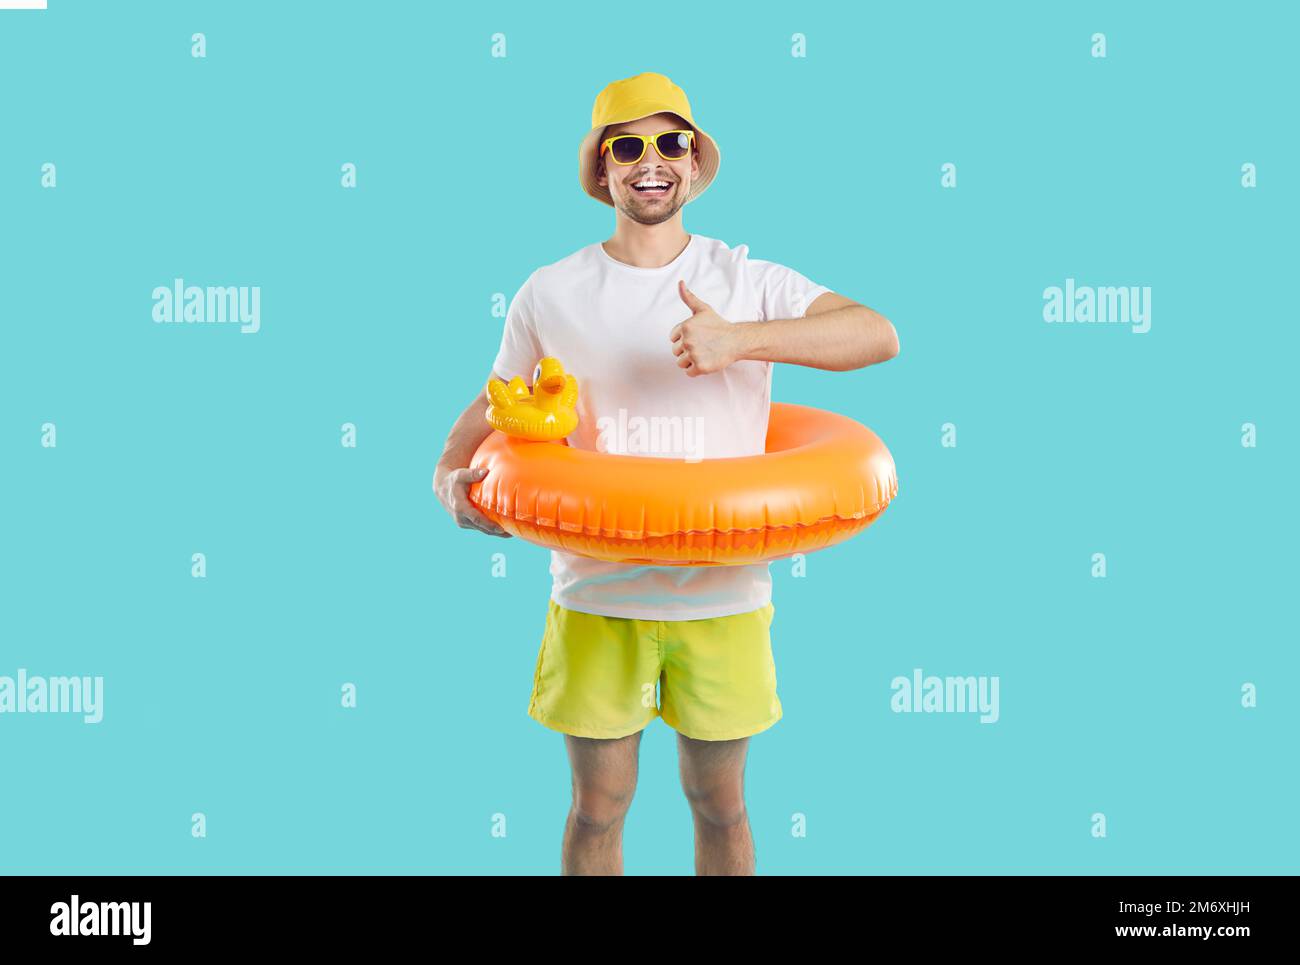 Un gars gai avec un cercle gonflable amusant pour nager montre pouce vers le haut sur fond bleu clair. Banque D'Images